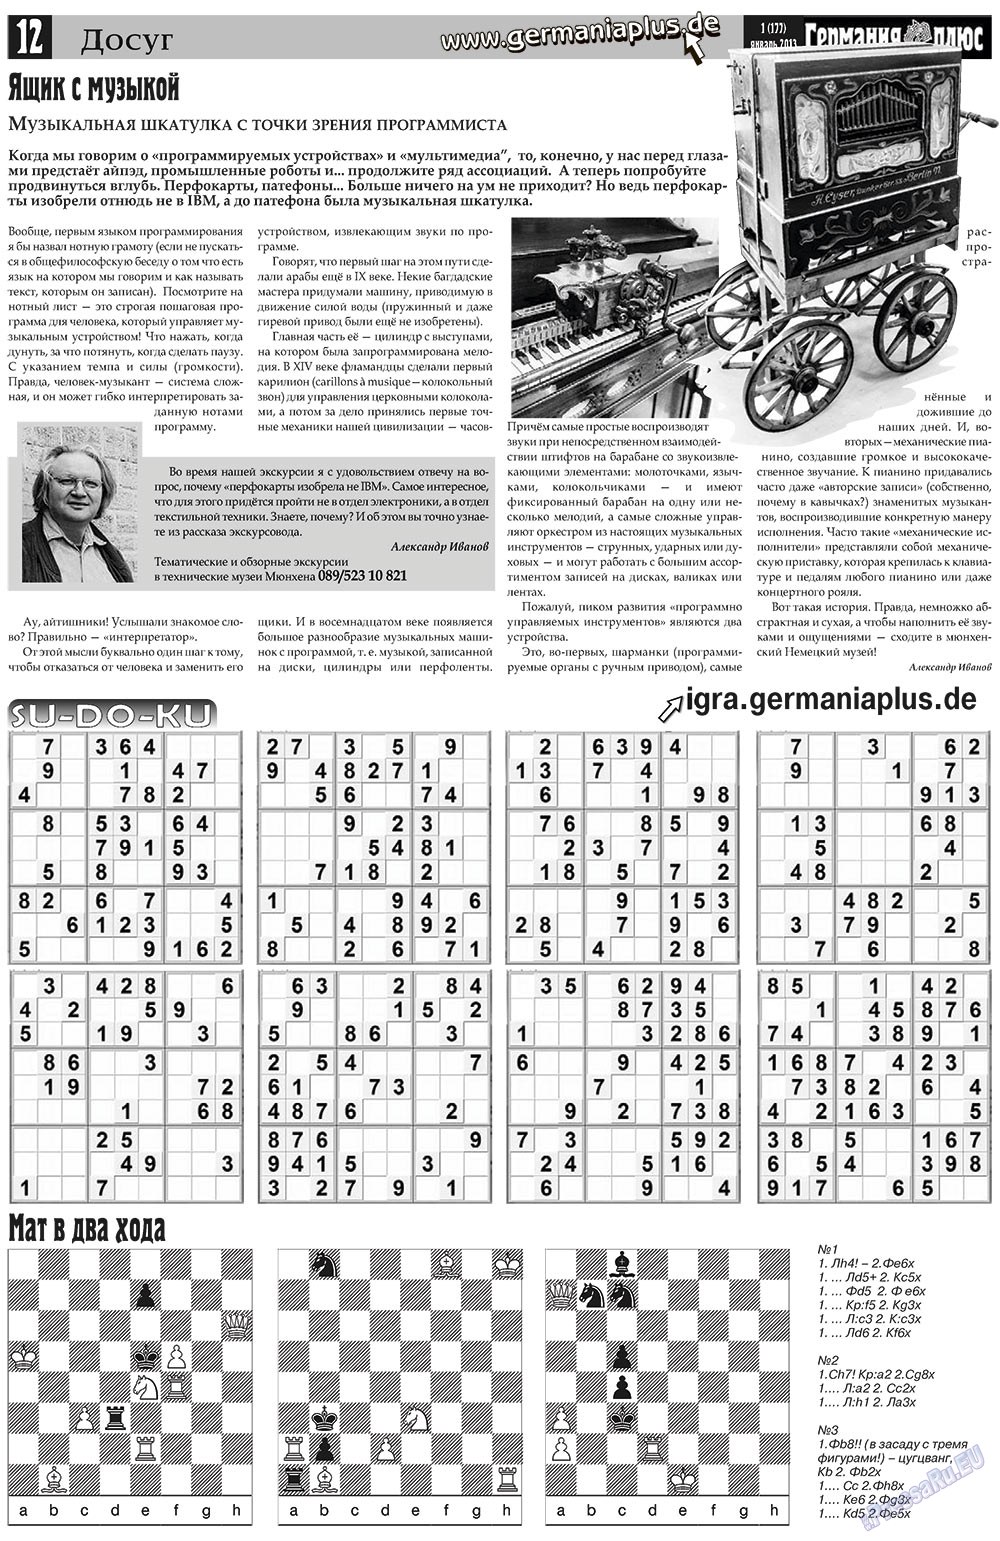 Германия плюс, газета. 2013 №1 стр.12